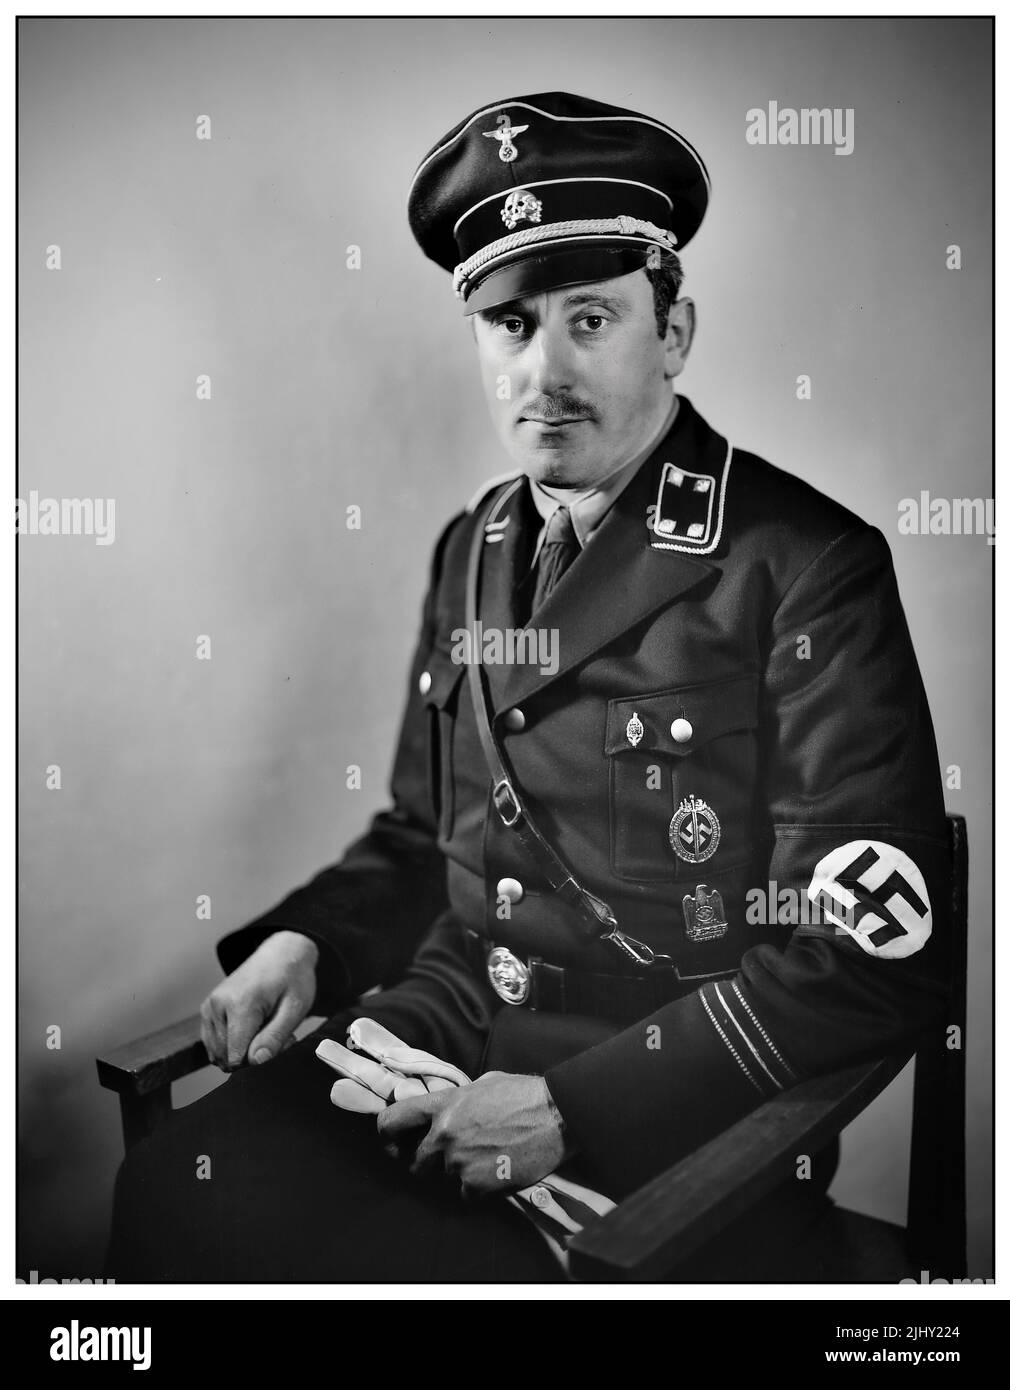 Emil Maurice (19 janvier 1897 – 6 février 1972) a été un ancien membre du Parti national socialiste allemand des travailleurs (Parti nazi) et un membre fondateur du Schutzstaffel (SS). Il a été le premier chauffeur personnel d'Hitler, et a été l'une des rares personnes d'ascendance mixte juive et ethnique allemande à servir dans les SS, étant déclaré un Aryan honoraire par Adolf Hitler en 1935. Banque D'Images